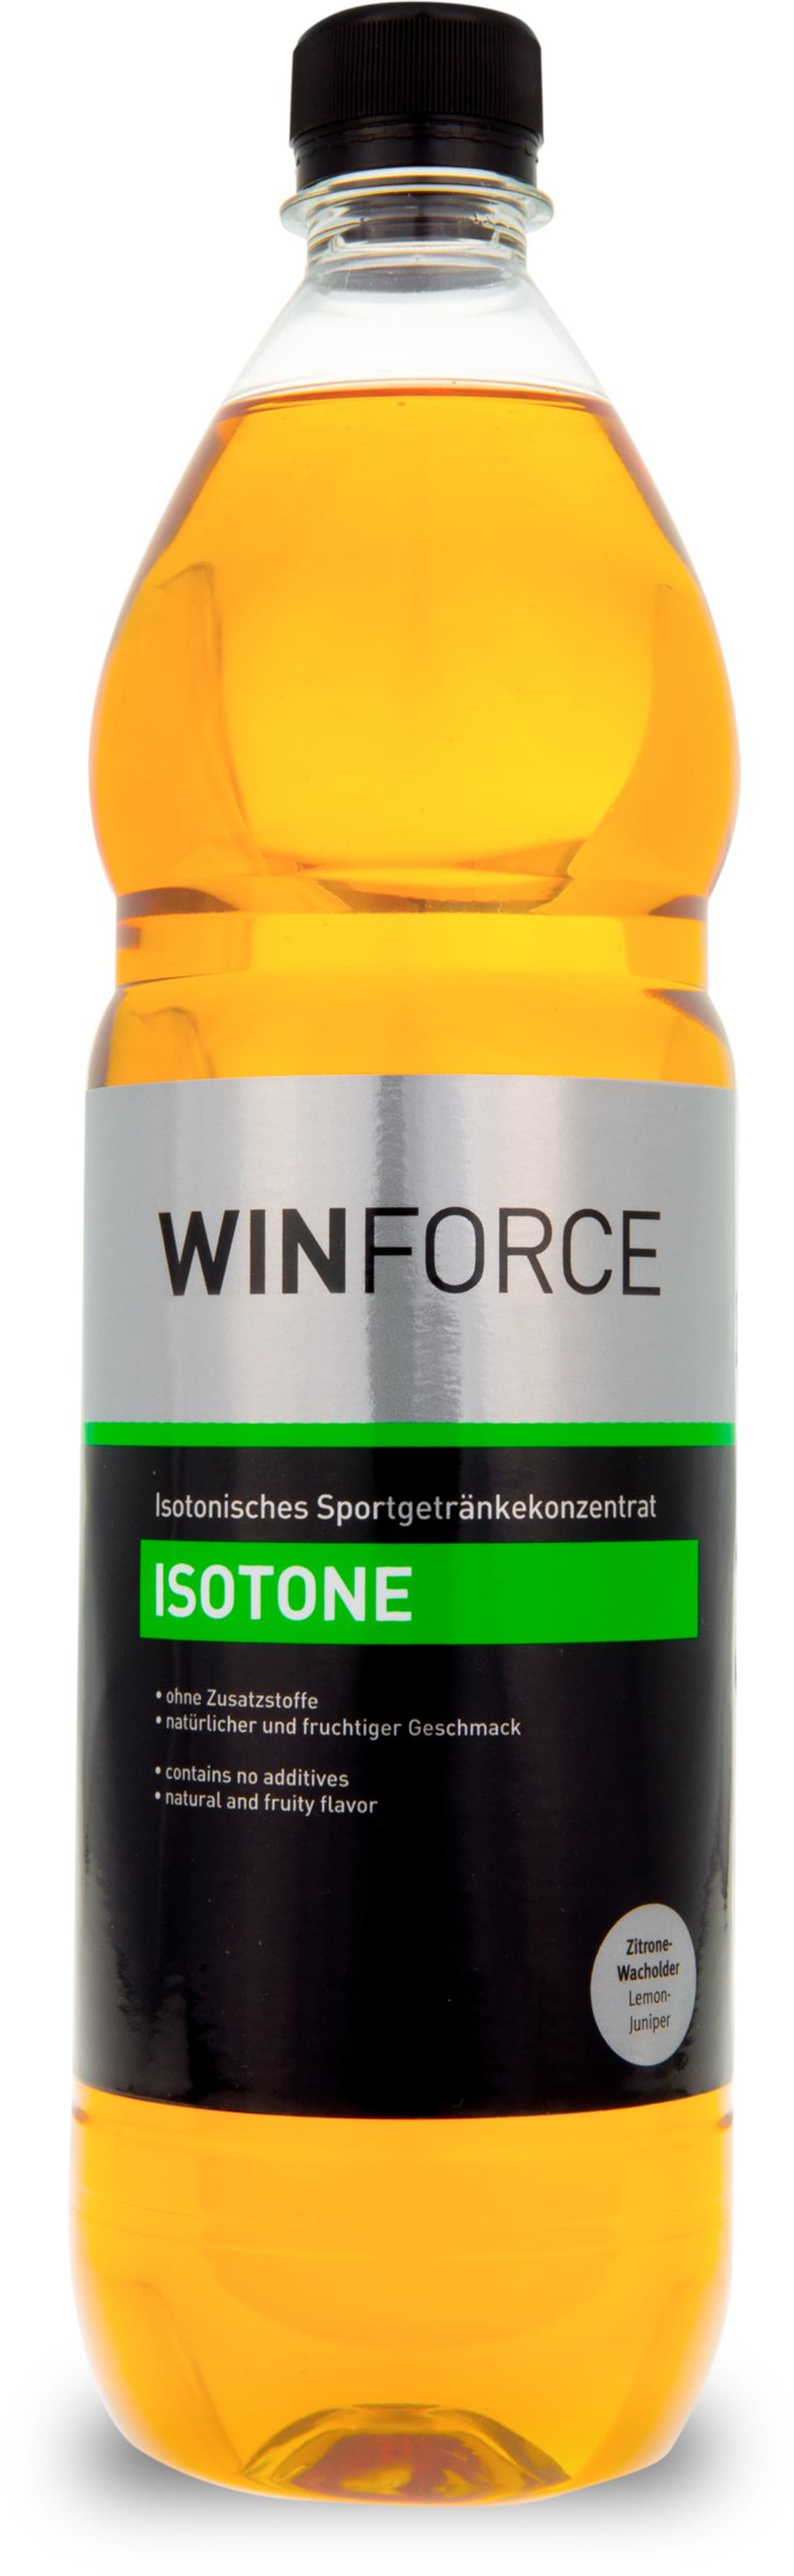 Winforce Winforce Isotone Sportgetränk farbig 1